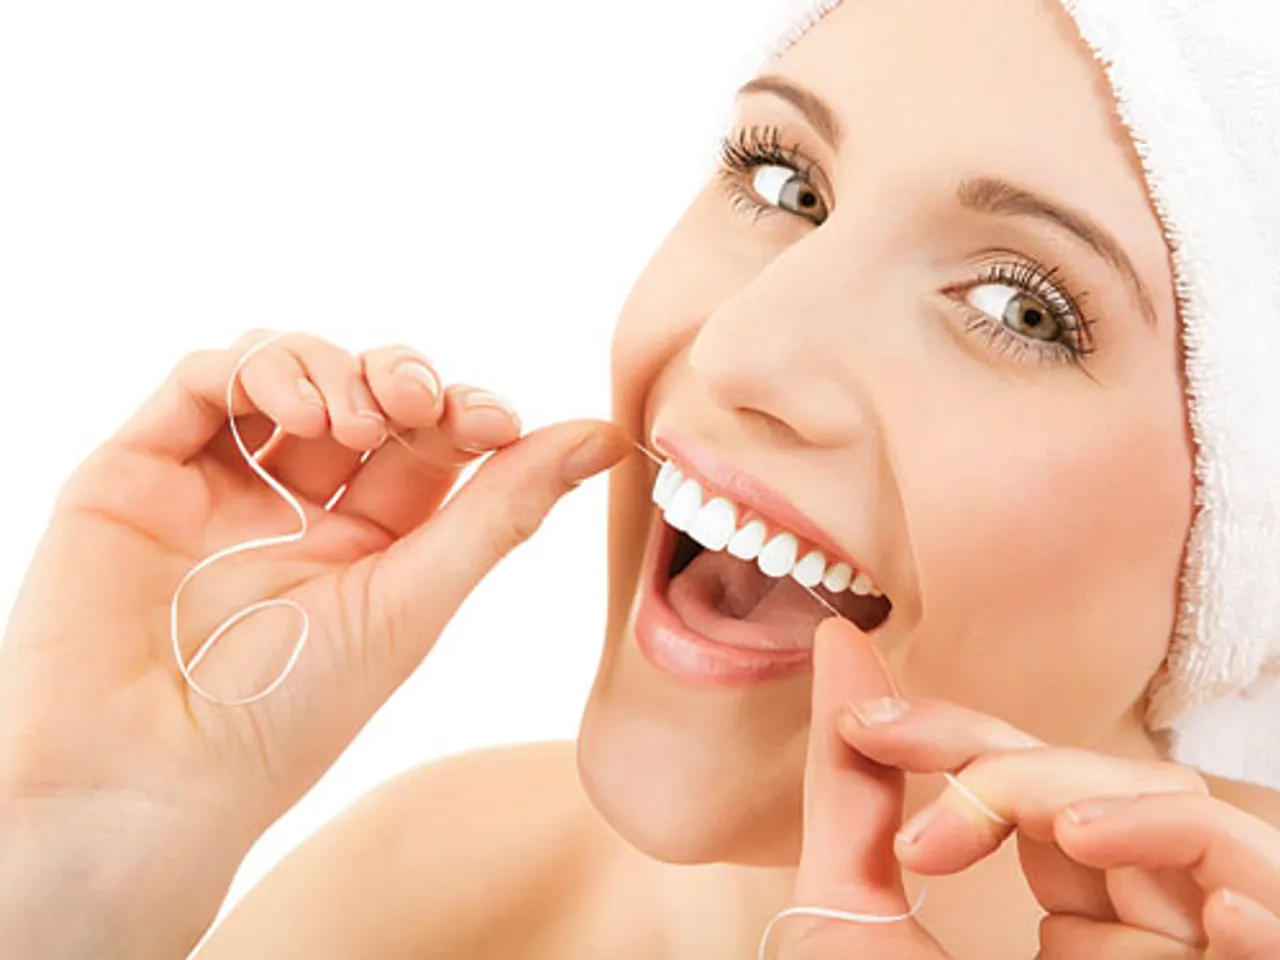 Giúp di chuyển dễ hơn đến 50% ở những kẻ răng nhỏ so với các loại chỉ nha khoa khác